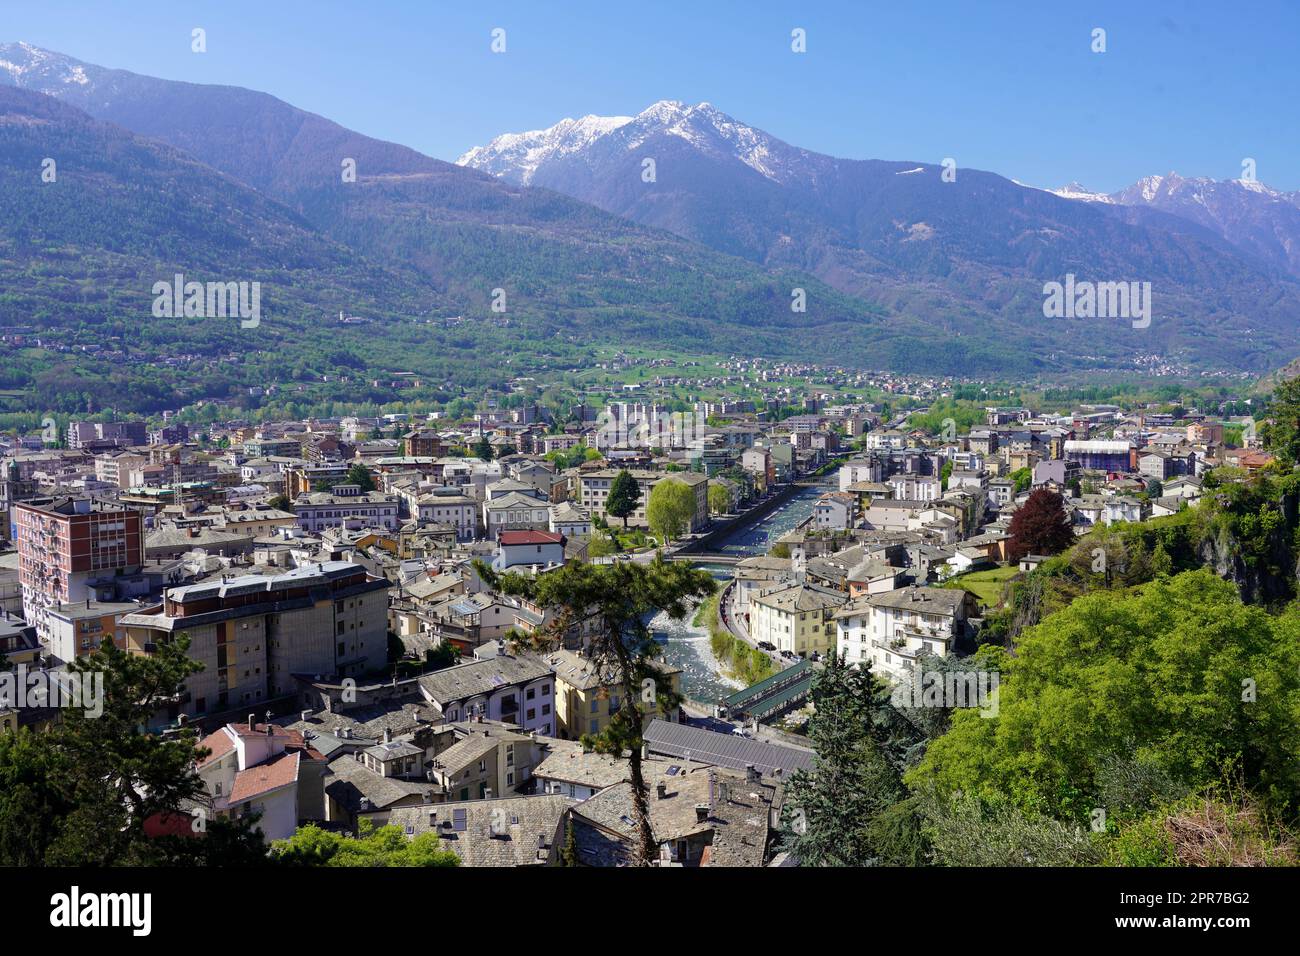 Luftpanorama der Stadt Sondrio im Valtellina-Tal, Lombardei, Italien Stockfoto